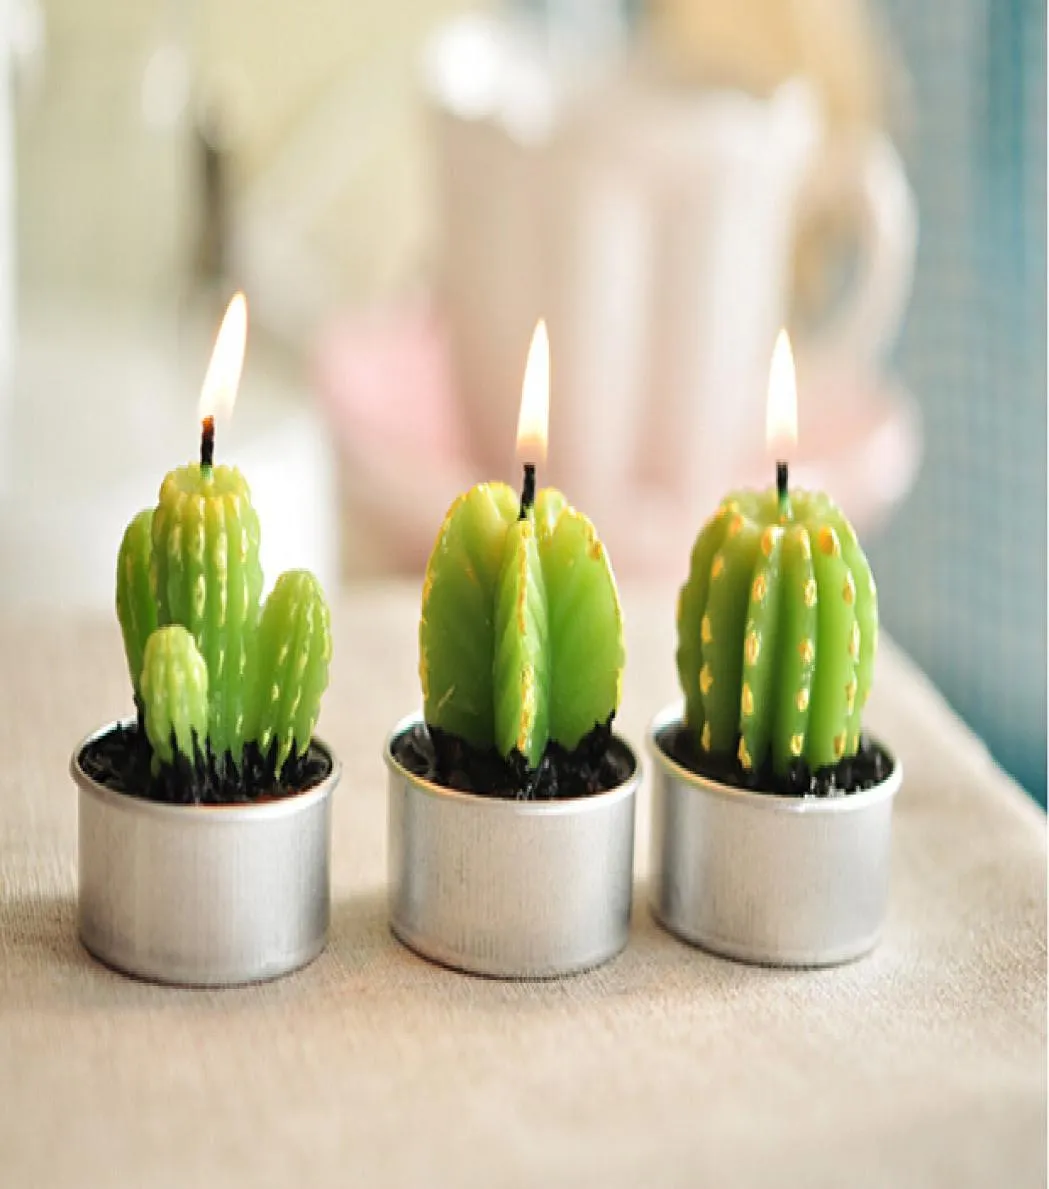 Entièrement rare mini bougies de cactus Decor Decor Home Table Garden 6pcslot kawaii décoration usine experte design quali3953279